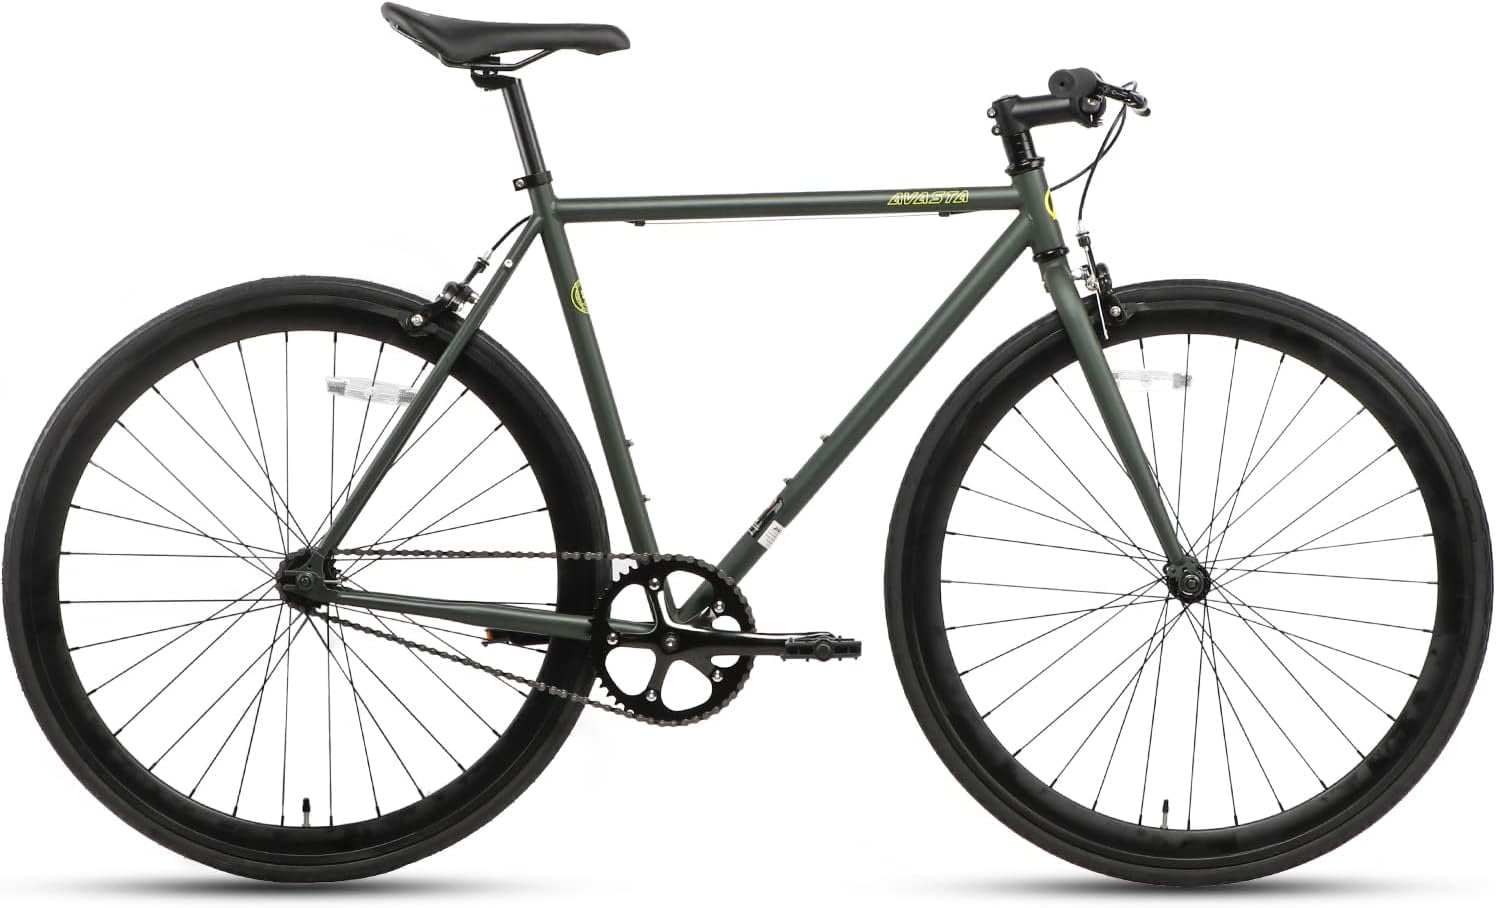 Avizar Gants pour Vélo Fonction tactile Paume Antidérapante West Biking XS  bleu - Accessoires divers smartphone - LDLC